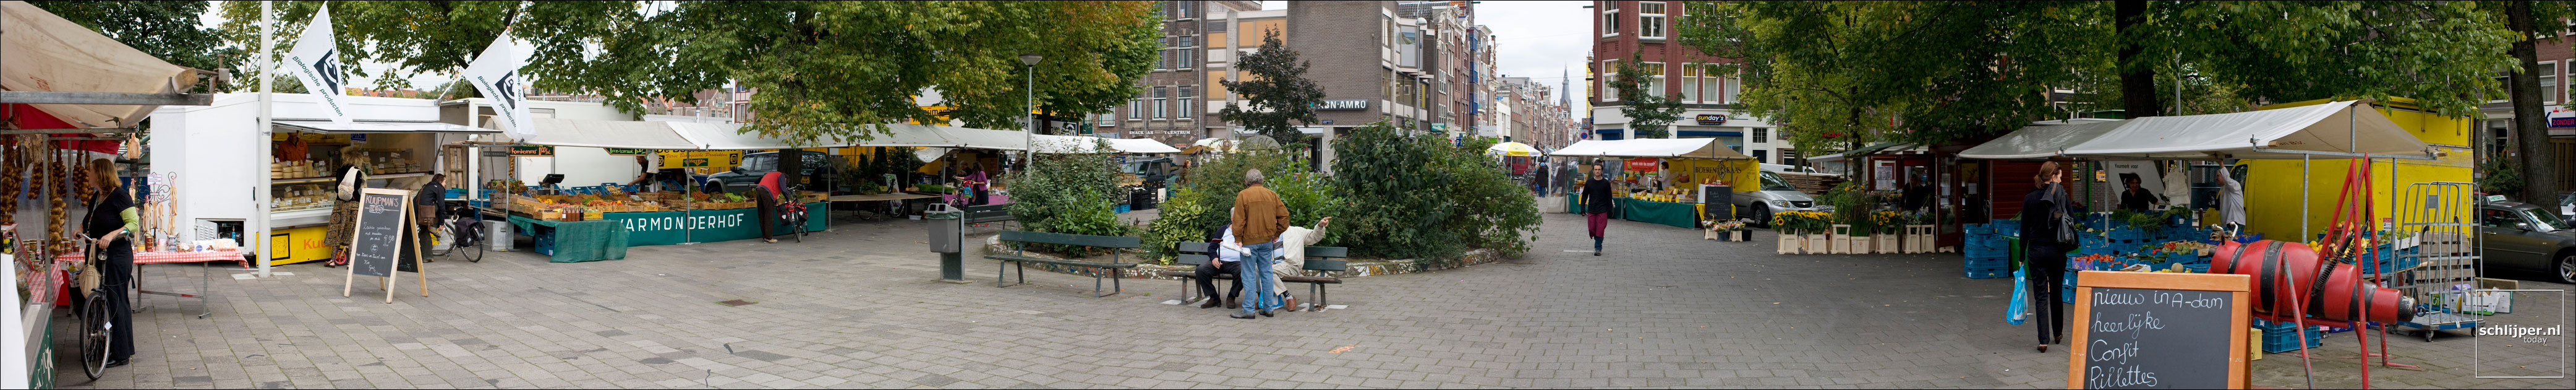 Nederland, Amsterdam, 12 september 2007